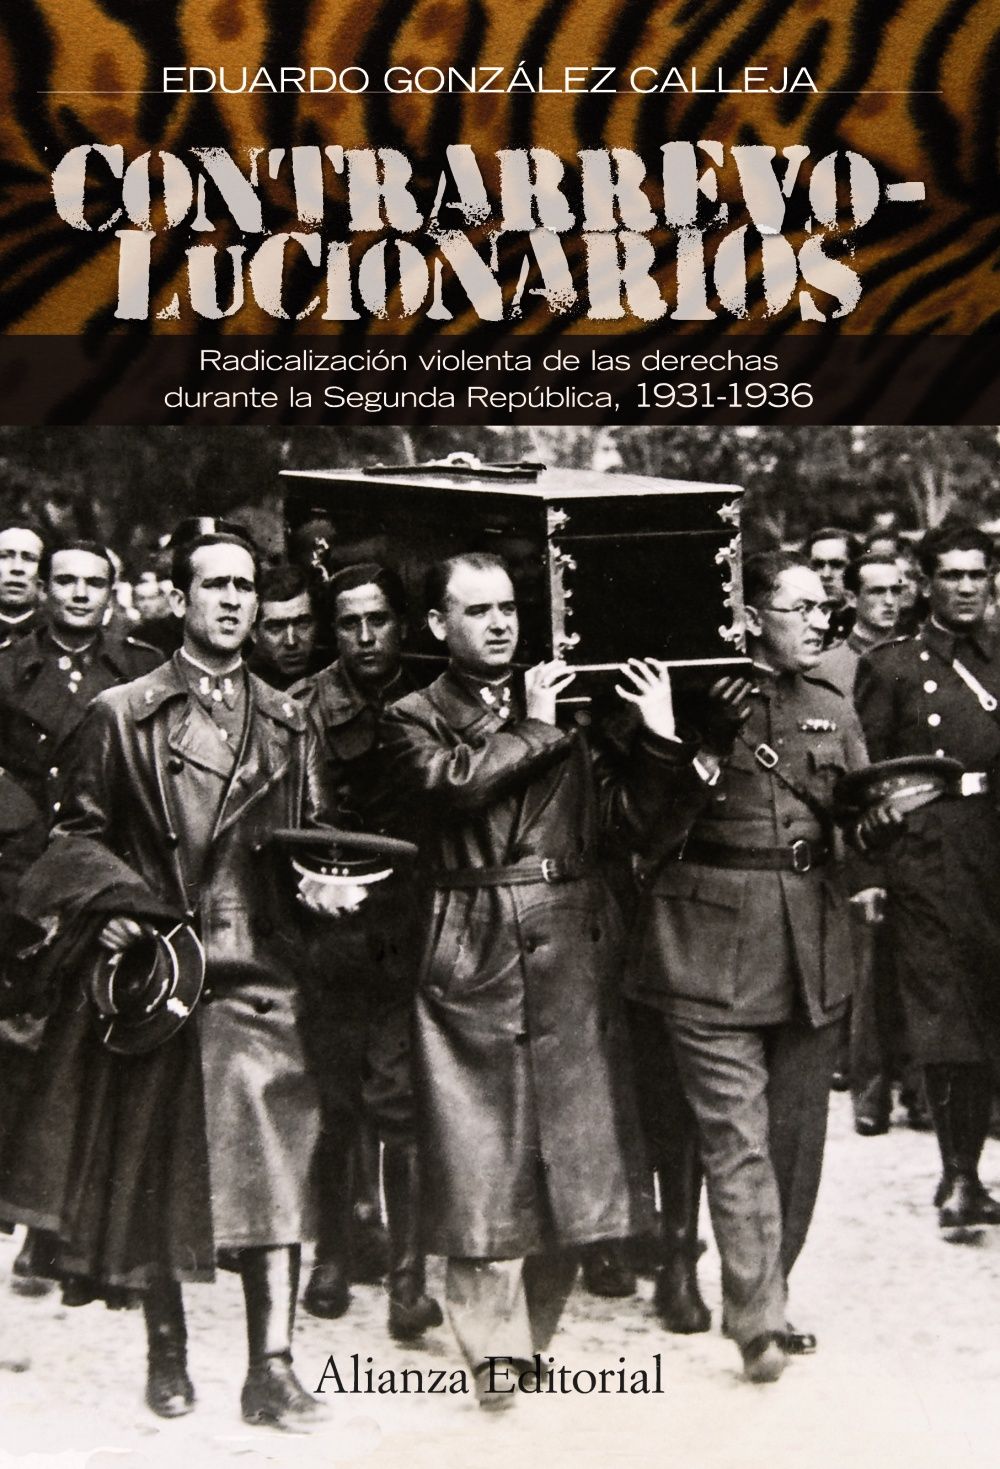 CONTRARREVOLUCIONARIOS. RADICALIZACIÓN VIOLENTA DE LAS DERECHAS DURANTE LA SEGUNDA REPÚBLICA, 1931-1936